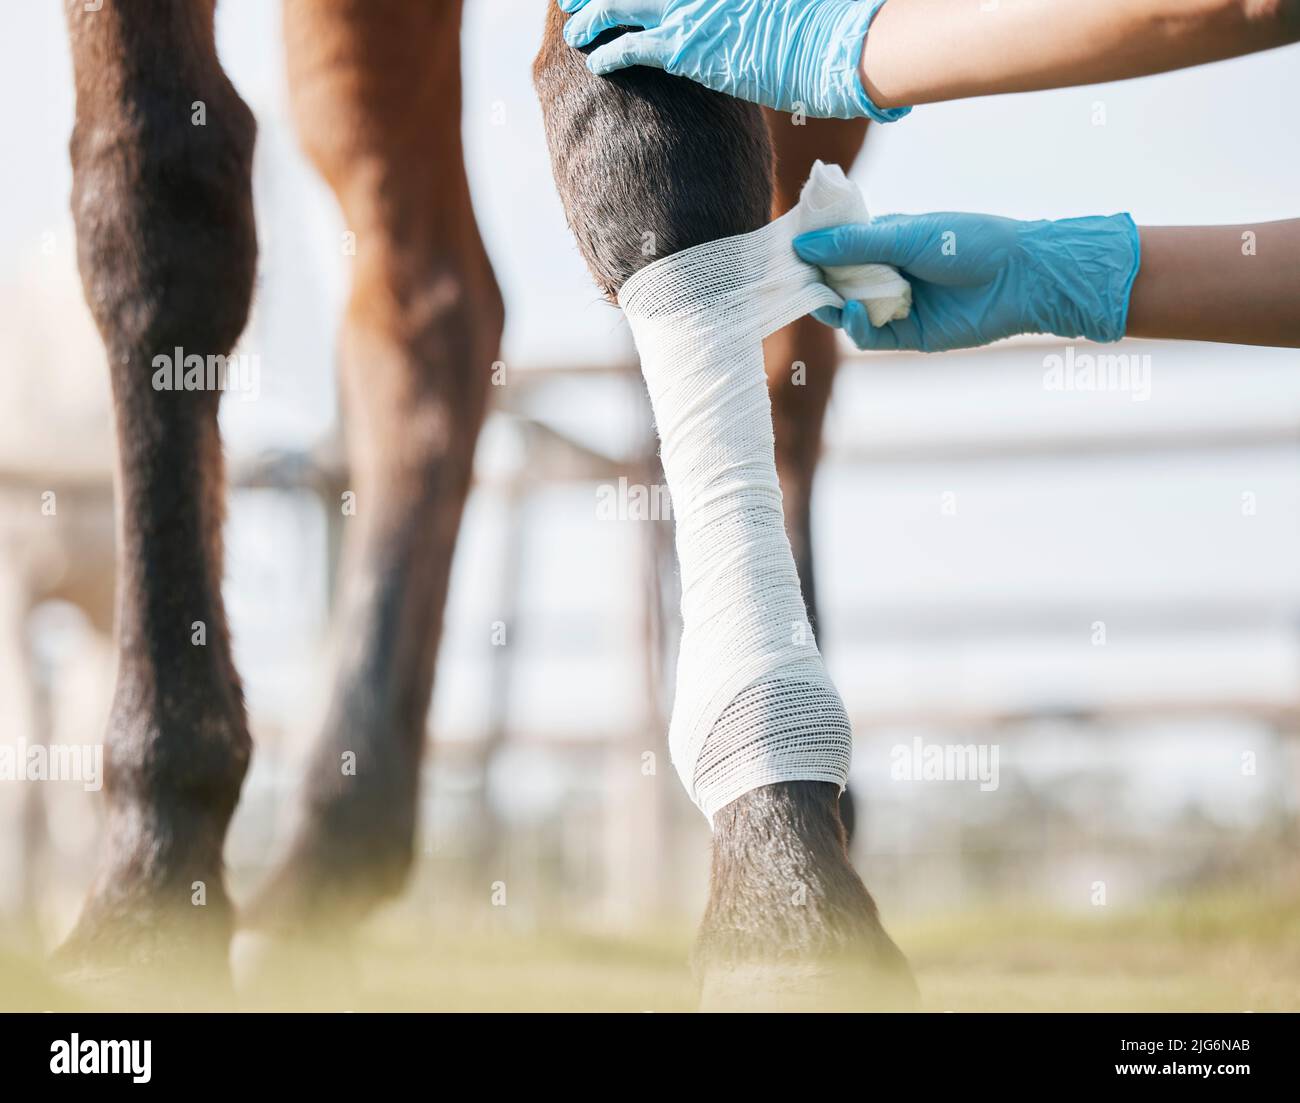 Sie werden sehr bald wieder normal sein. Ausgeschnittene Aufnahme eines nicht erkennbaren Tierarztes, der auf einer Farm einen Verband um ein Pferdebein wickelt. Stockfoto